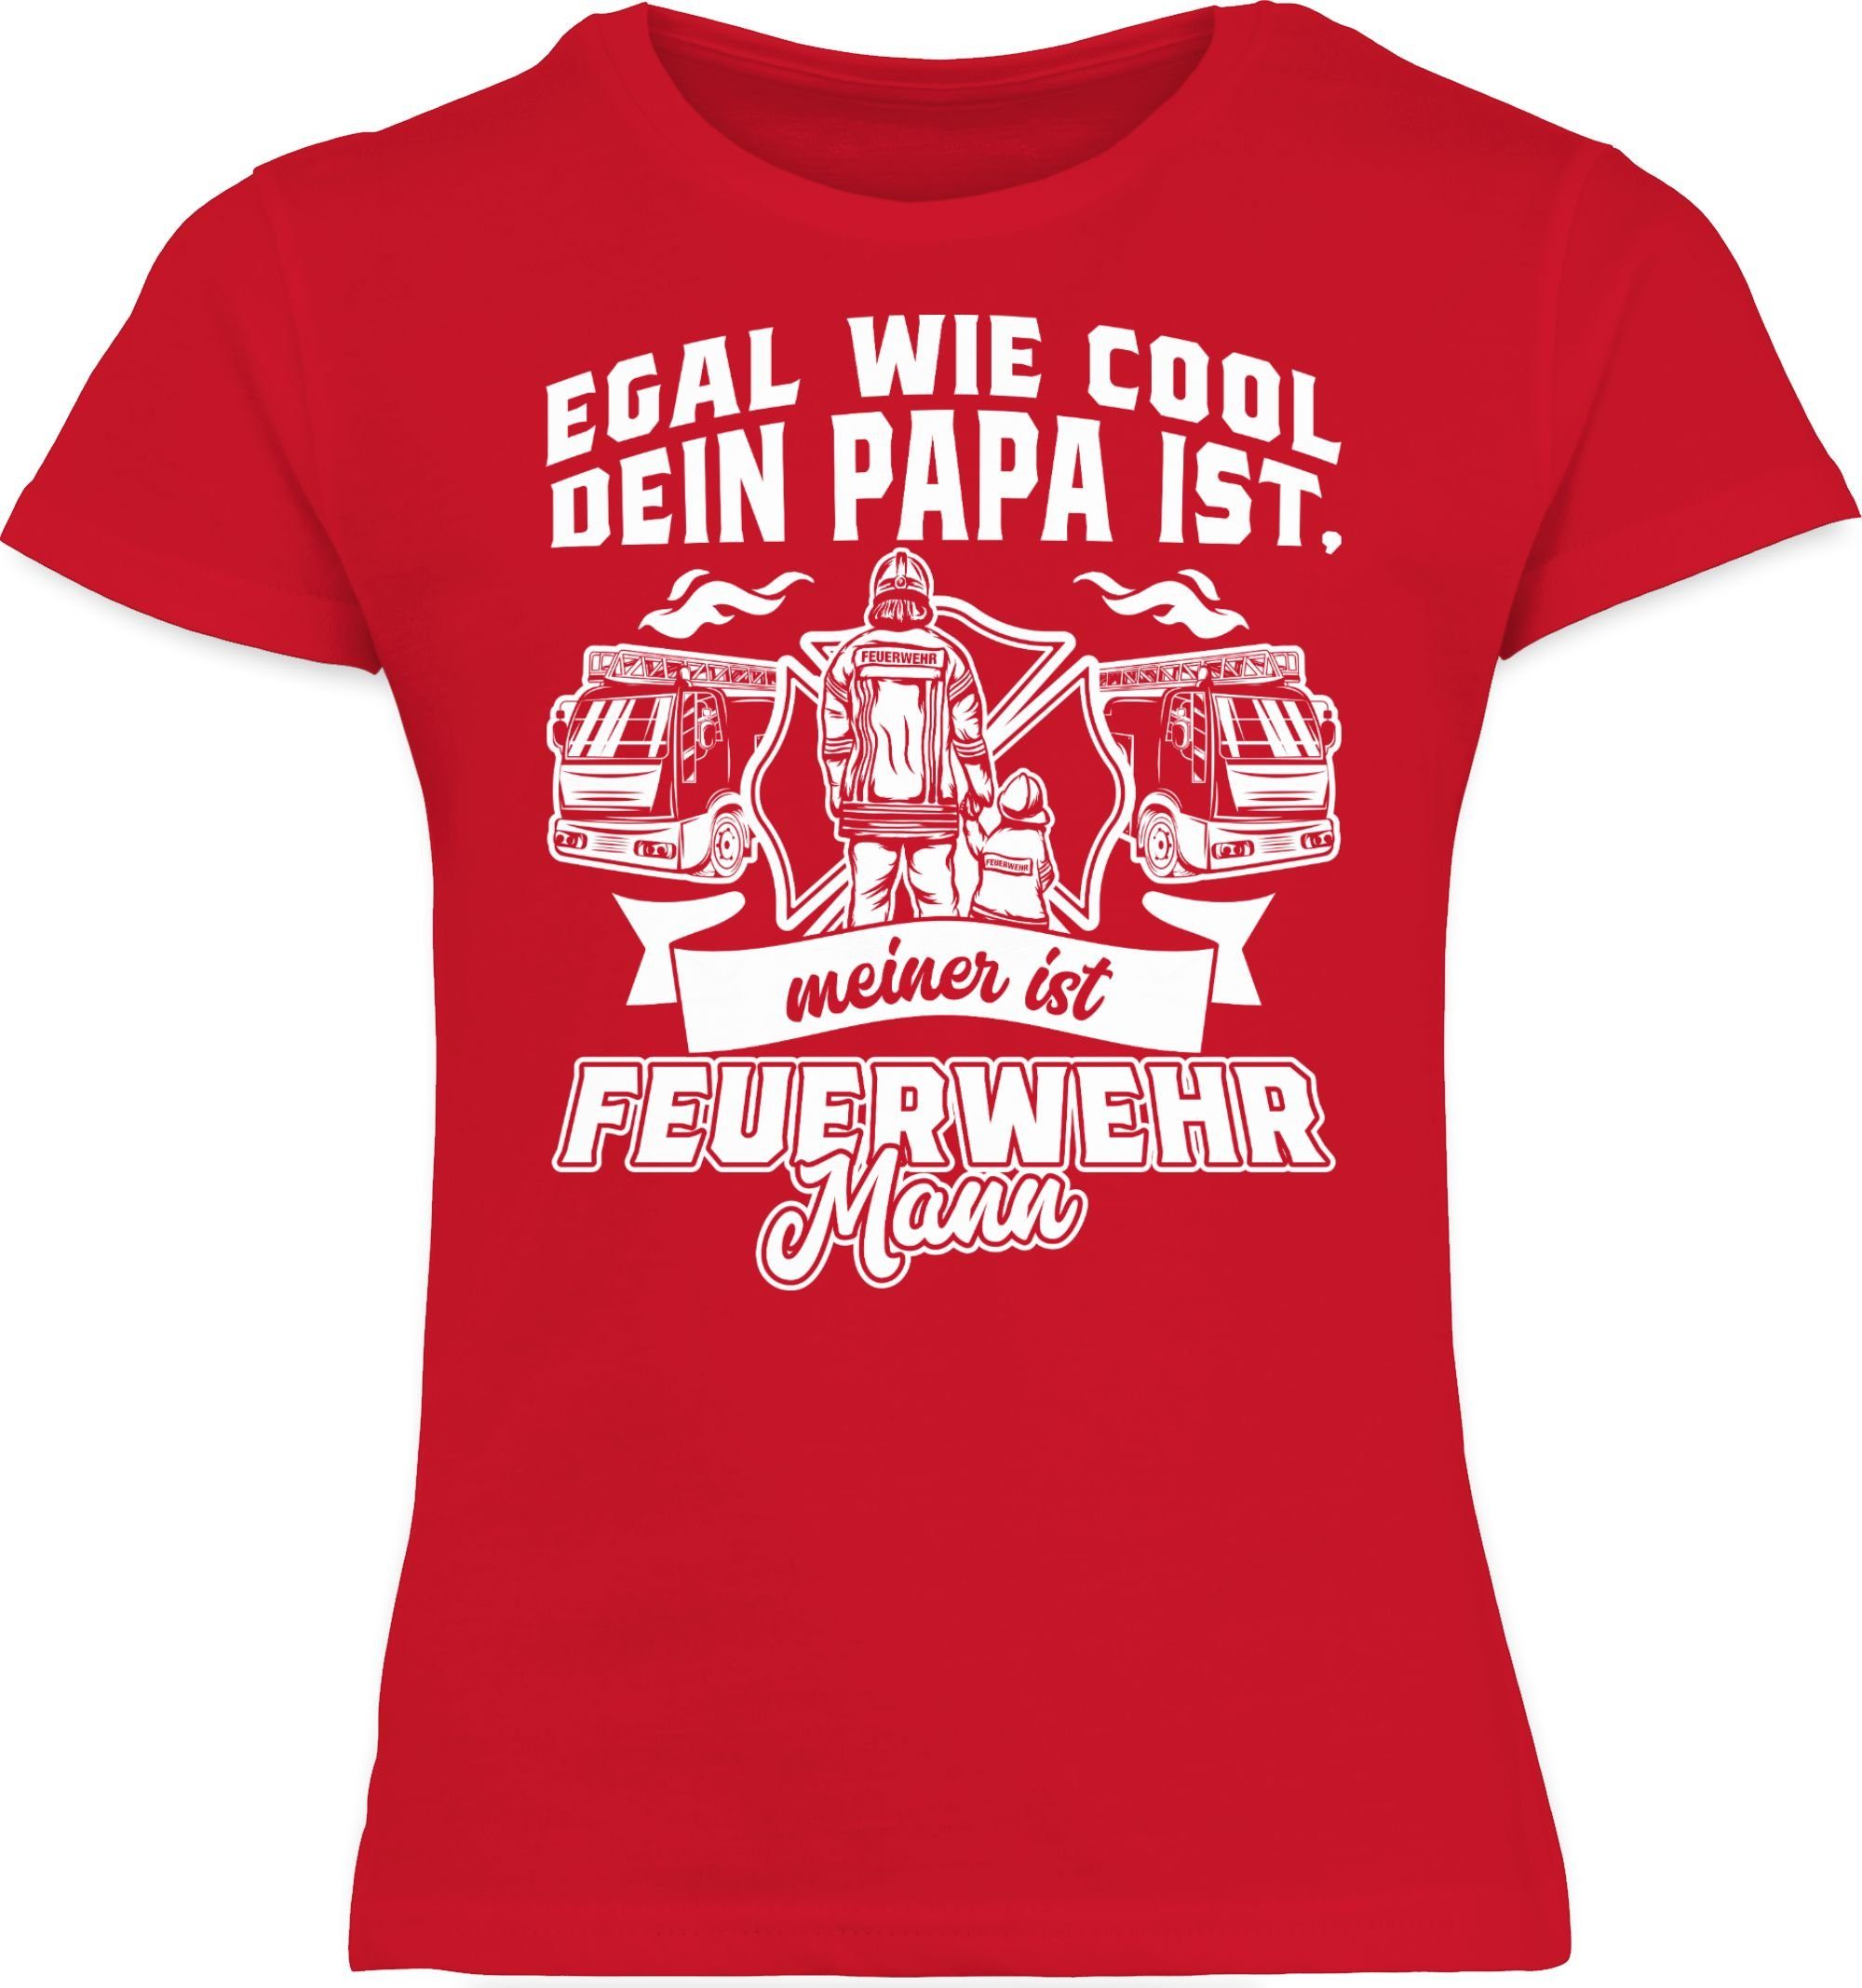 cool dein ist T-Shirt Feuerwehr Mann Feuerwehr 2 ist Shirtracer Rot meiner Papa Egal wie